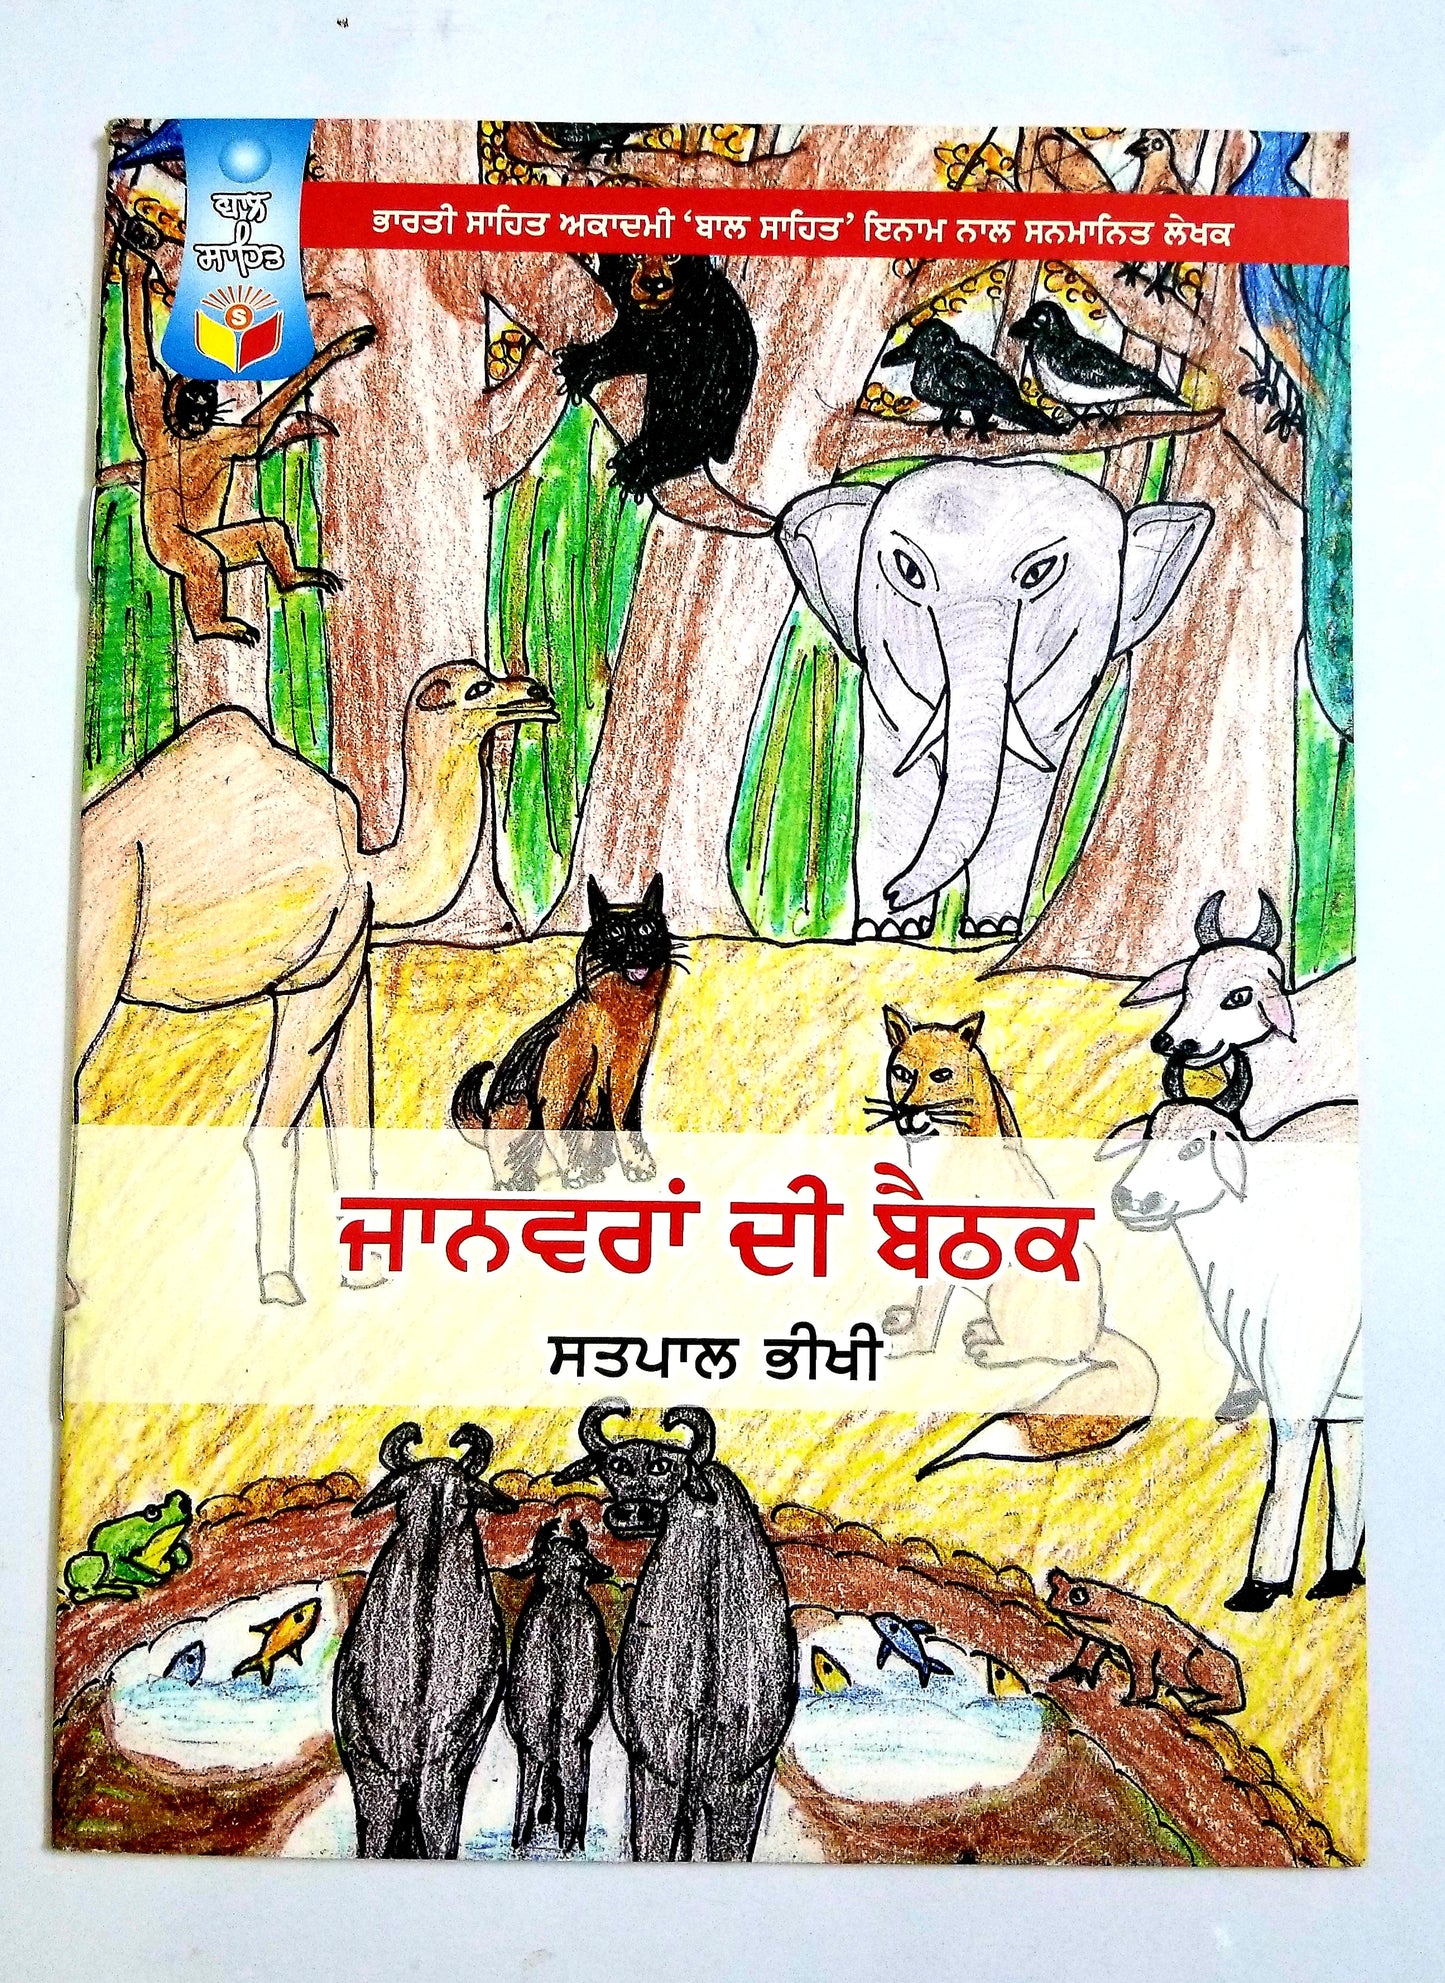 ਜਾਨਵਰਾਂ ਦੀ ਬੈਠਕ  - Janvara De Baithak